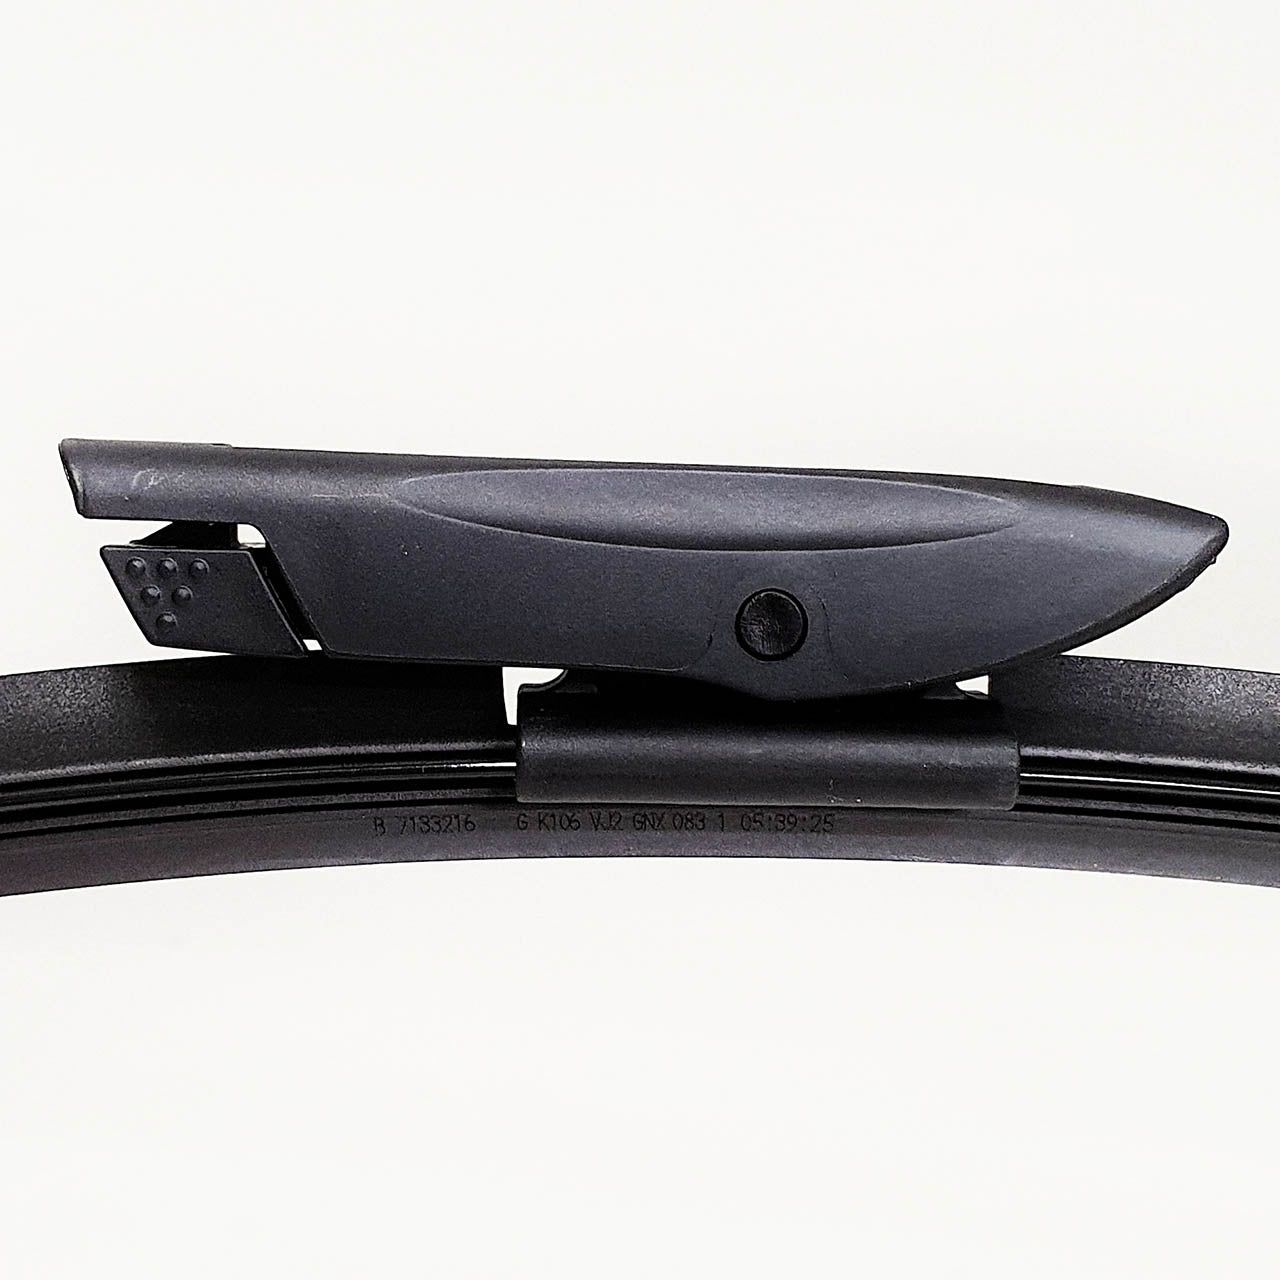 Genuine SMART Front Wiper Blades for 453 models